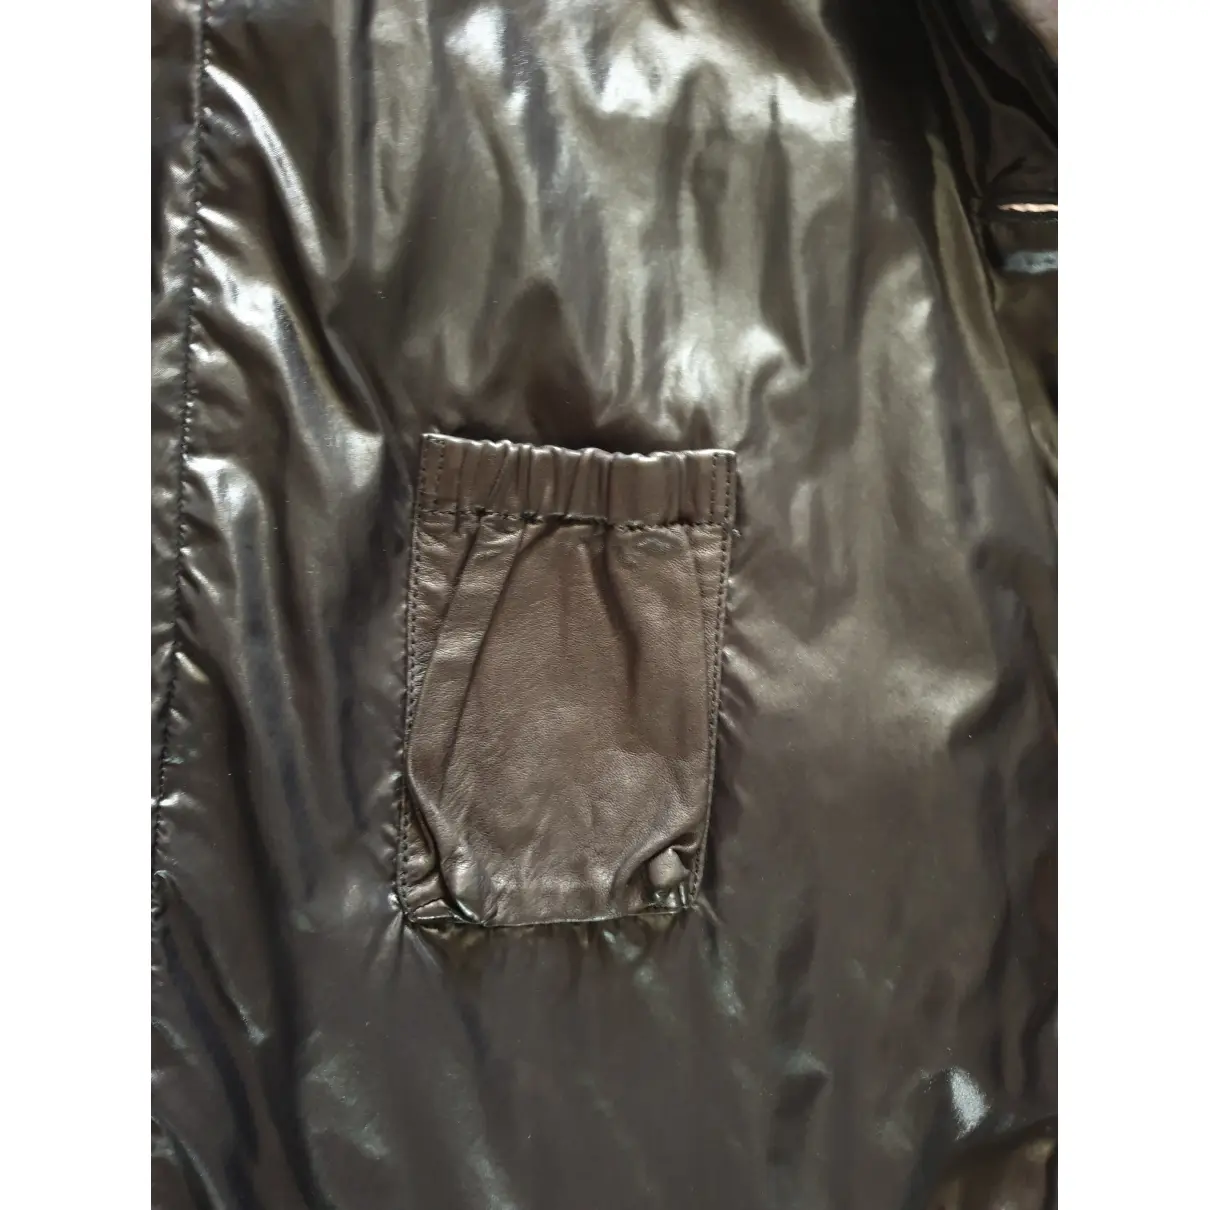 Leather coat Giorgio Armani